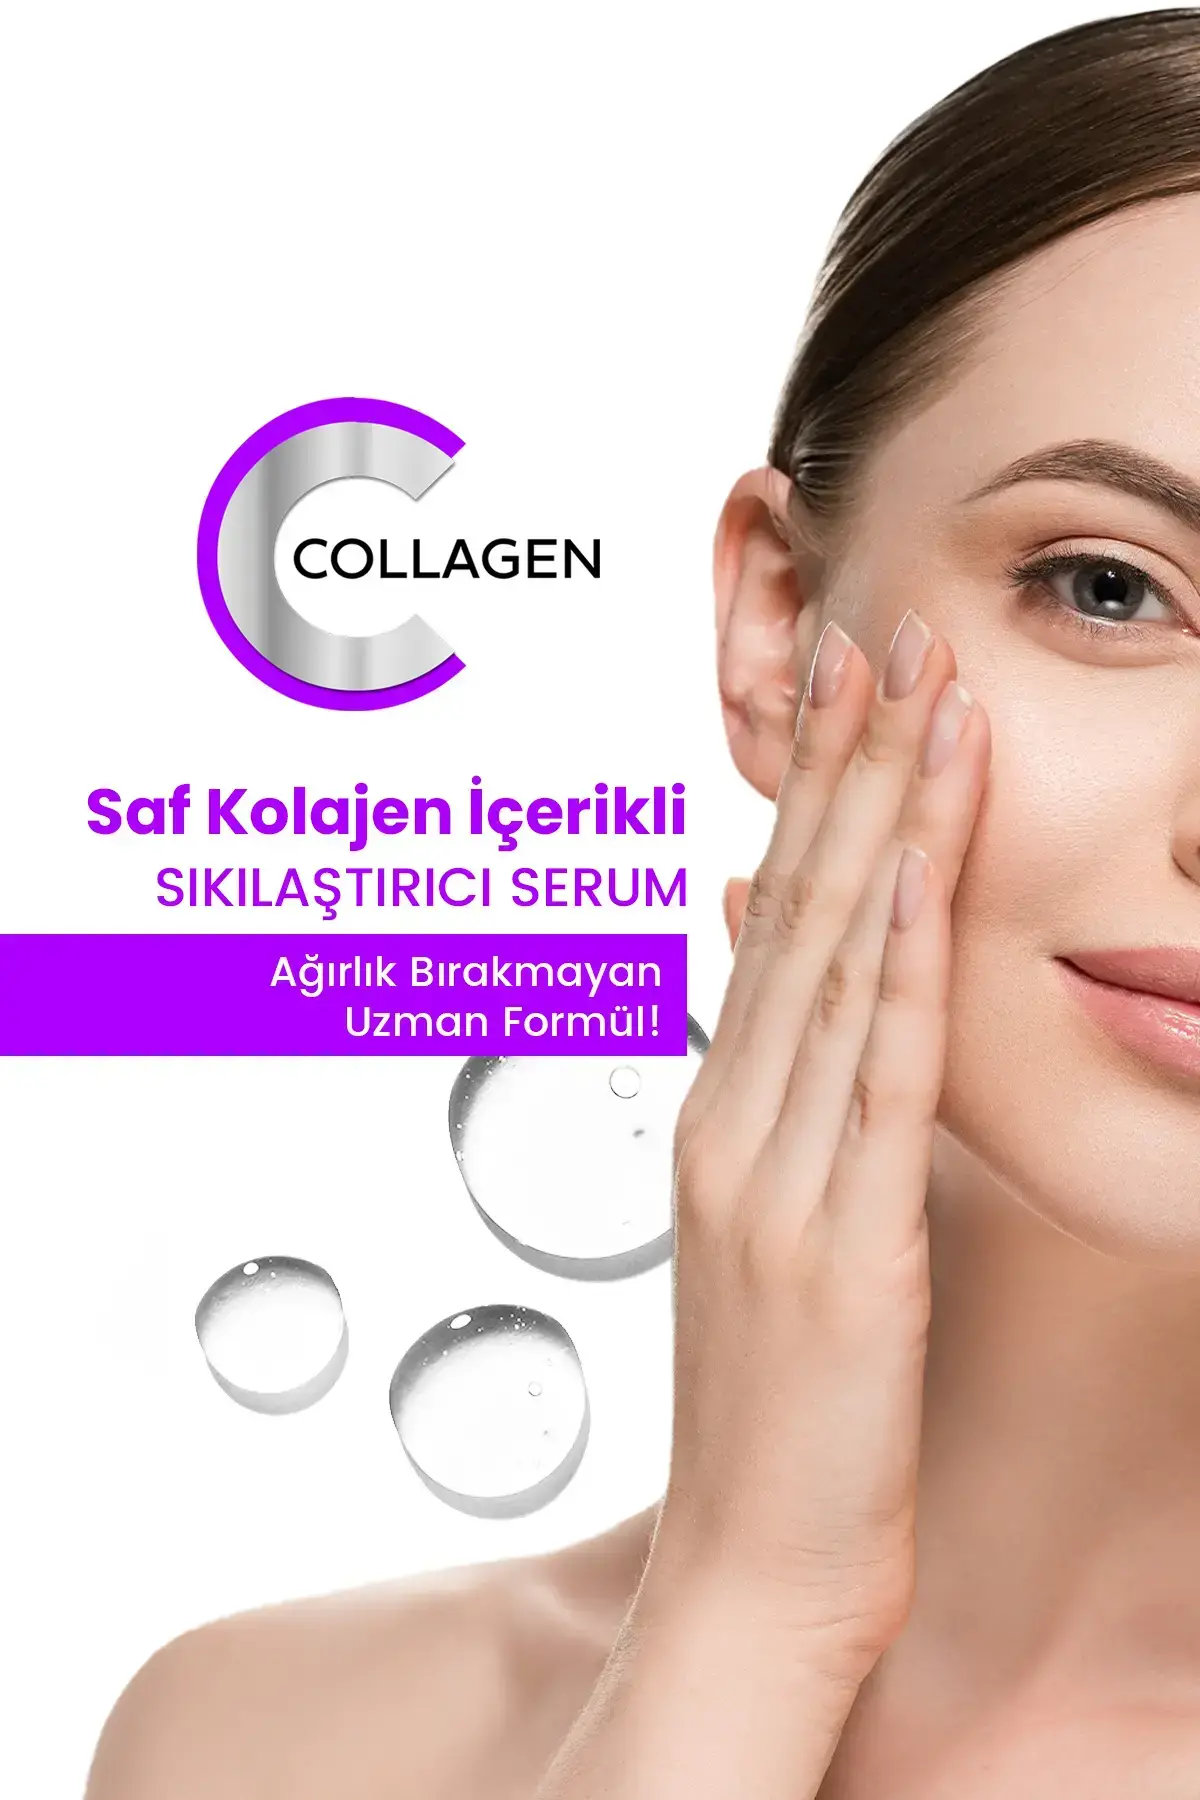 PROCSIN Anti Aging Collagen Serum 20 ML - 5